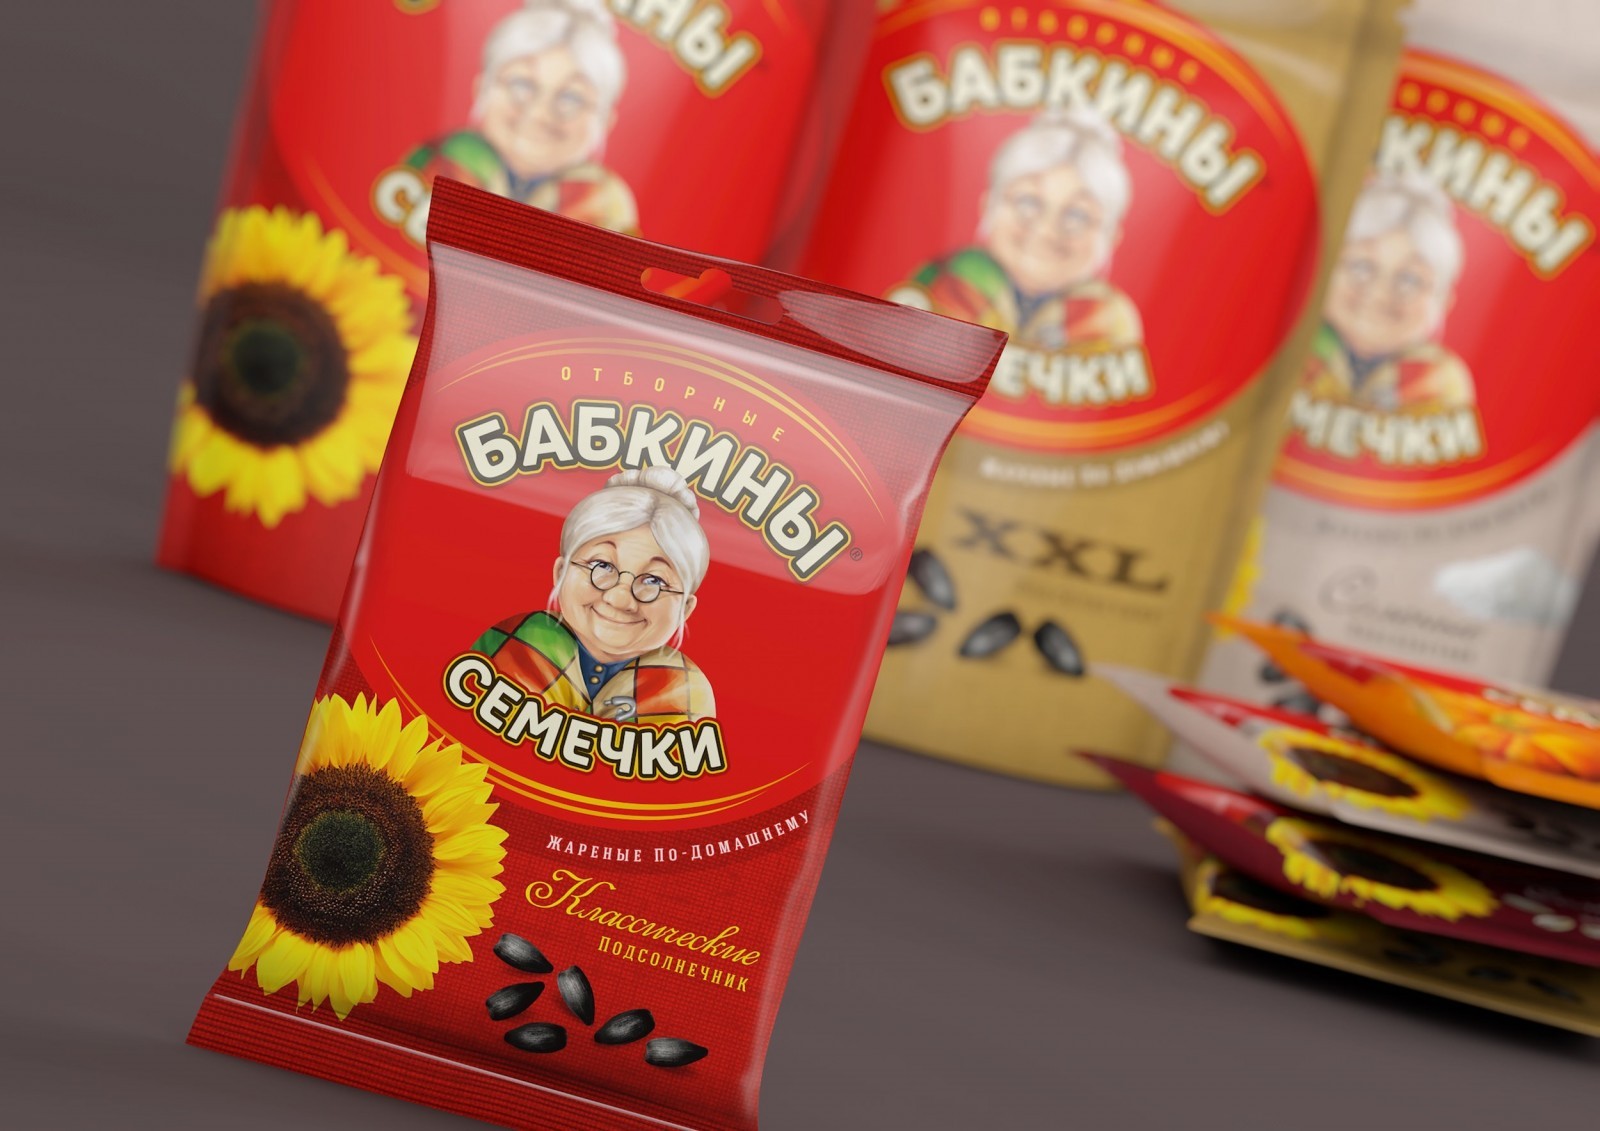 Break Brand & Packaging Design – Babkini Semechki